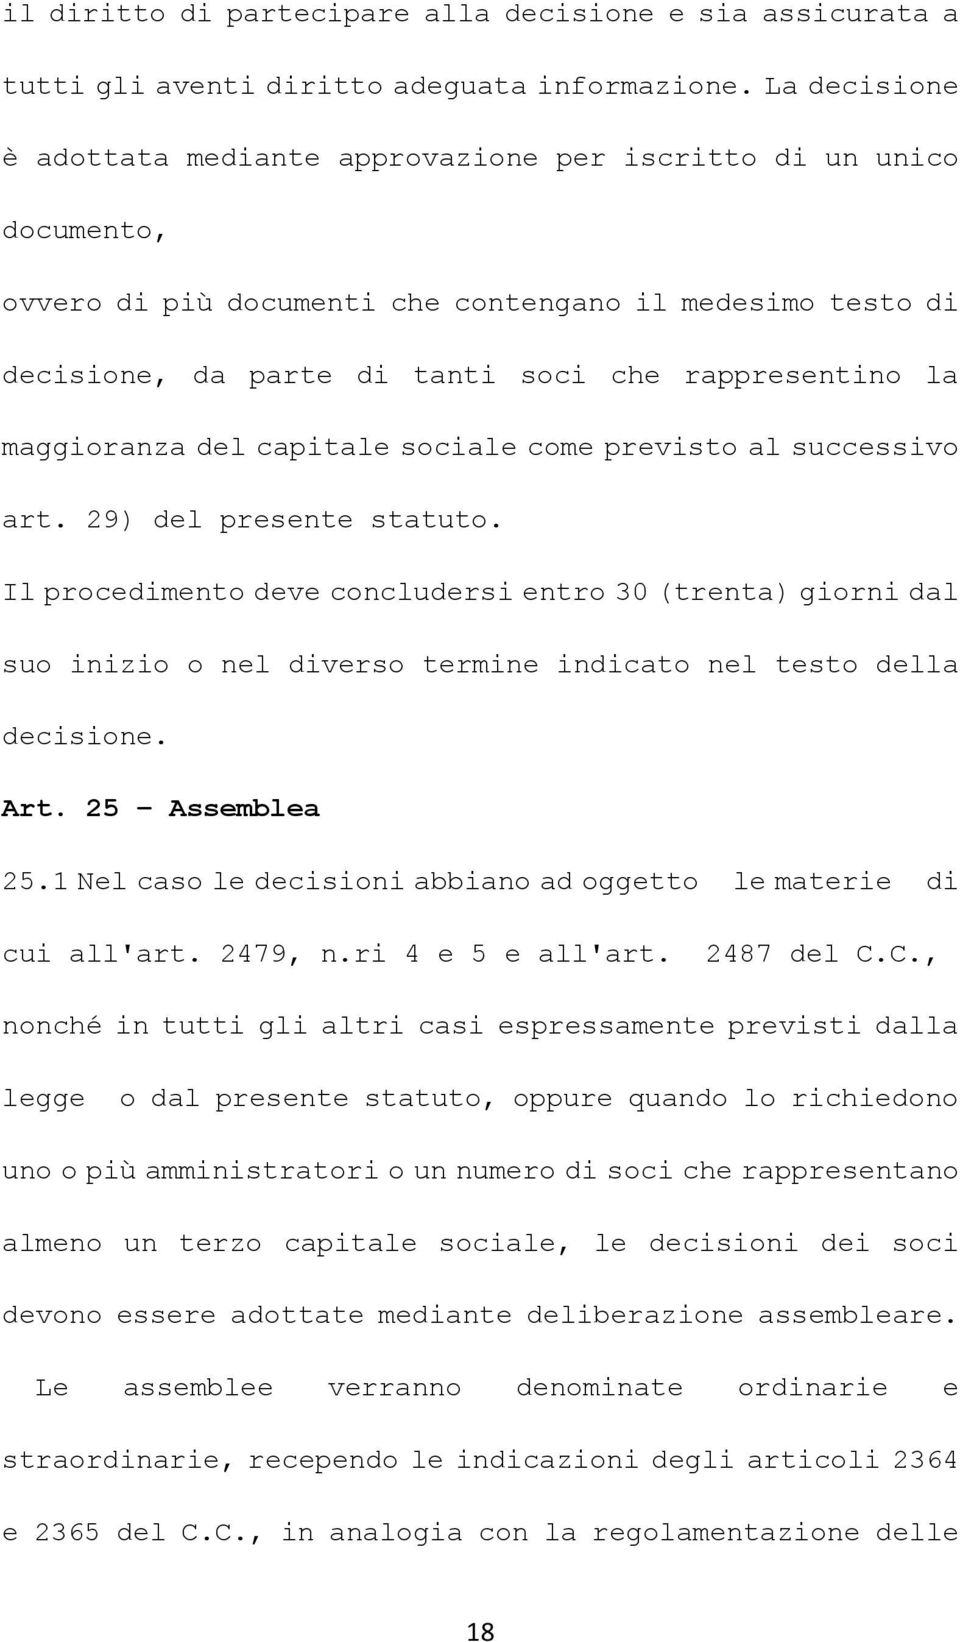 maggioranza del capitale sociale come previsto al successivo art. 29) del presente statuto.